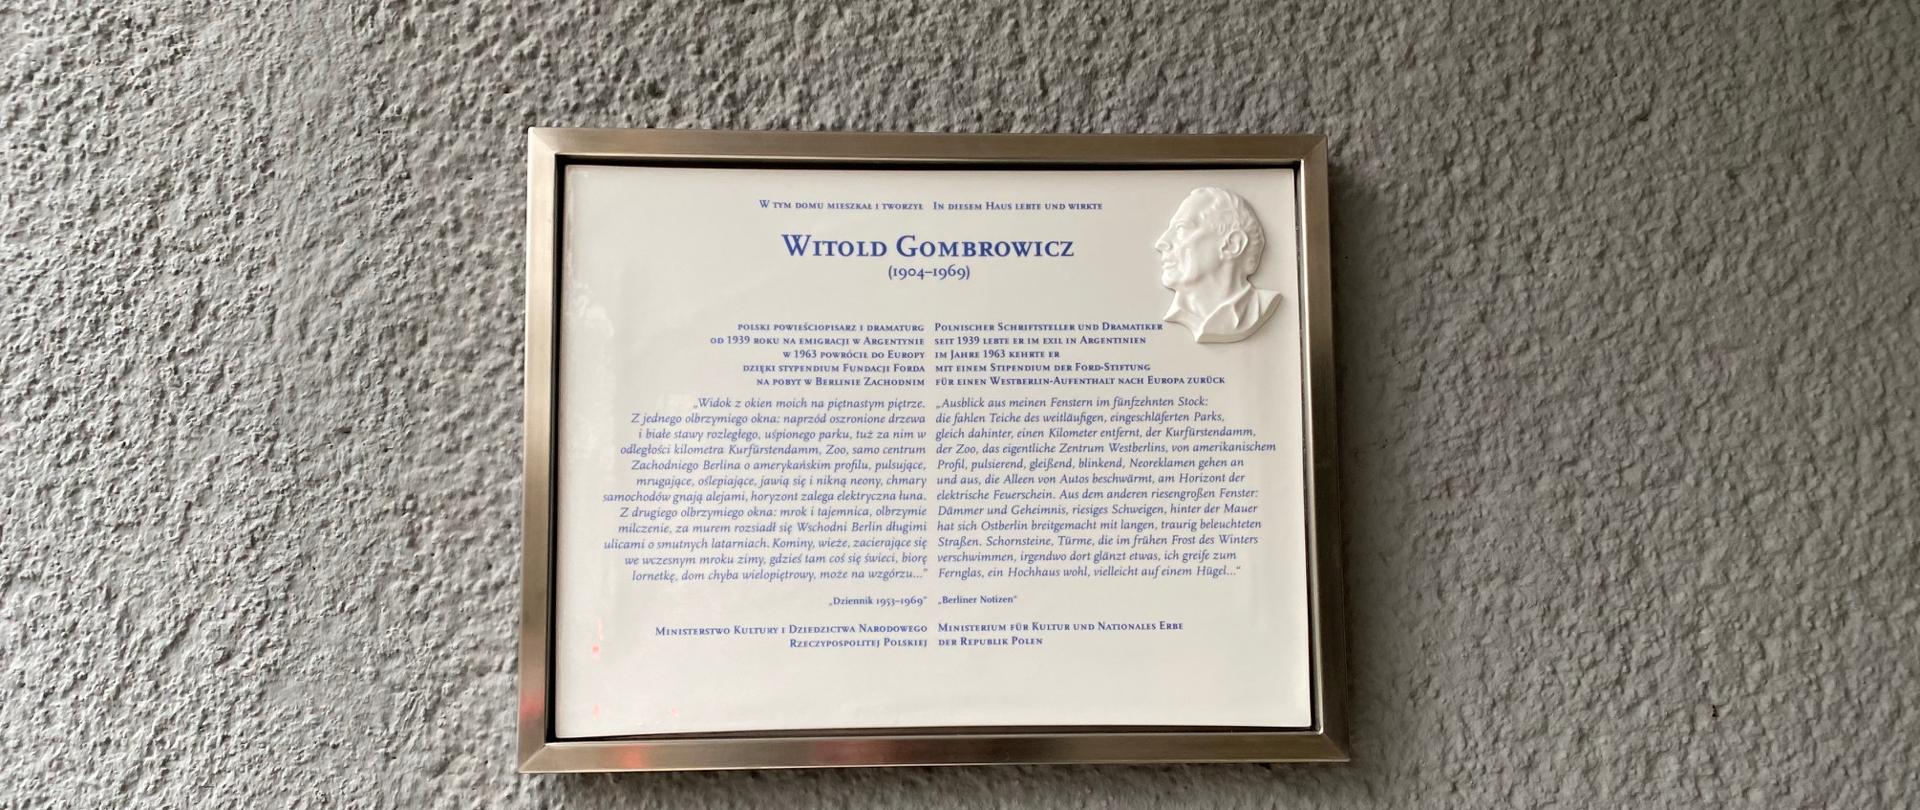 Odsłonięcie tablicy upamiętniającej Witolda Gombrowicza w Berlinie